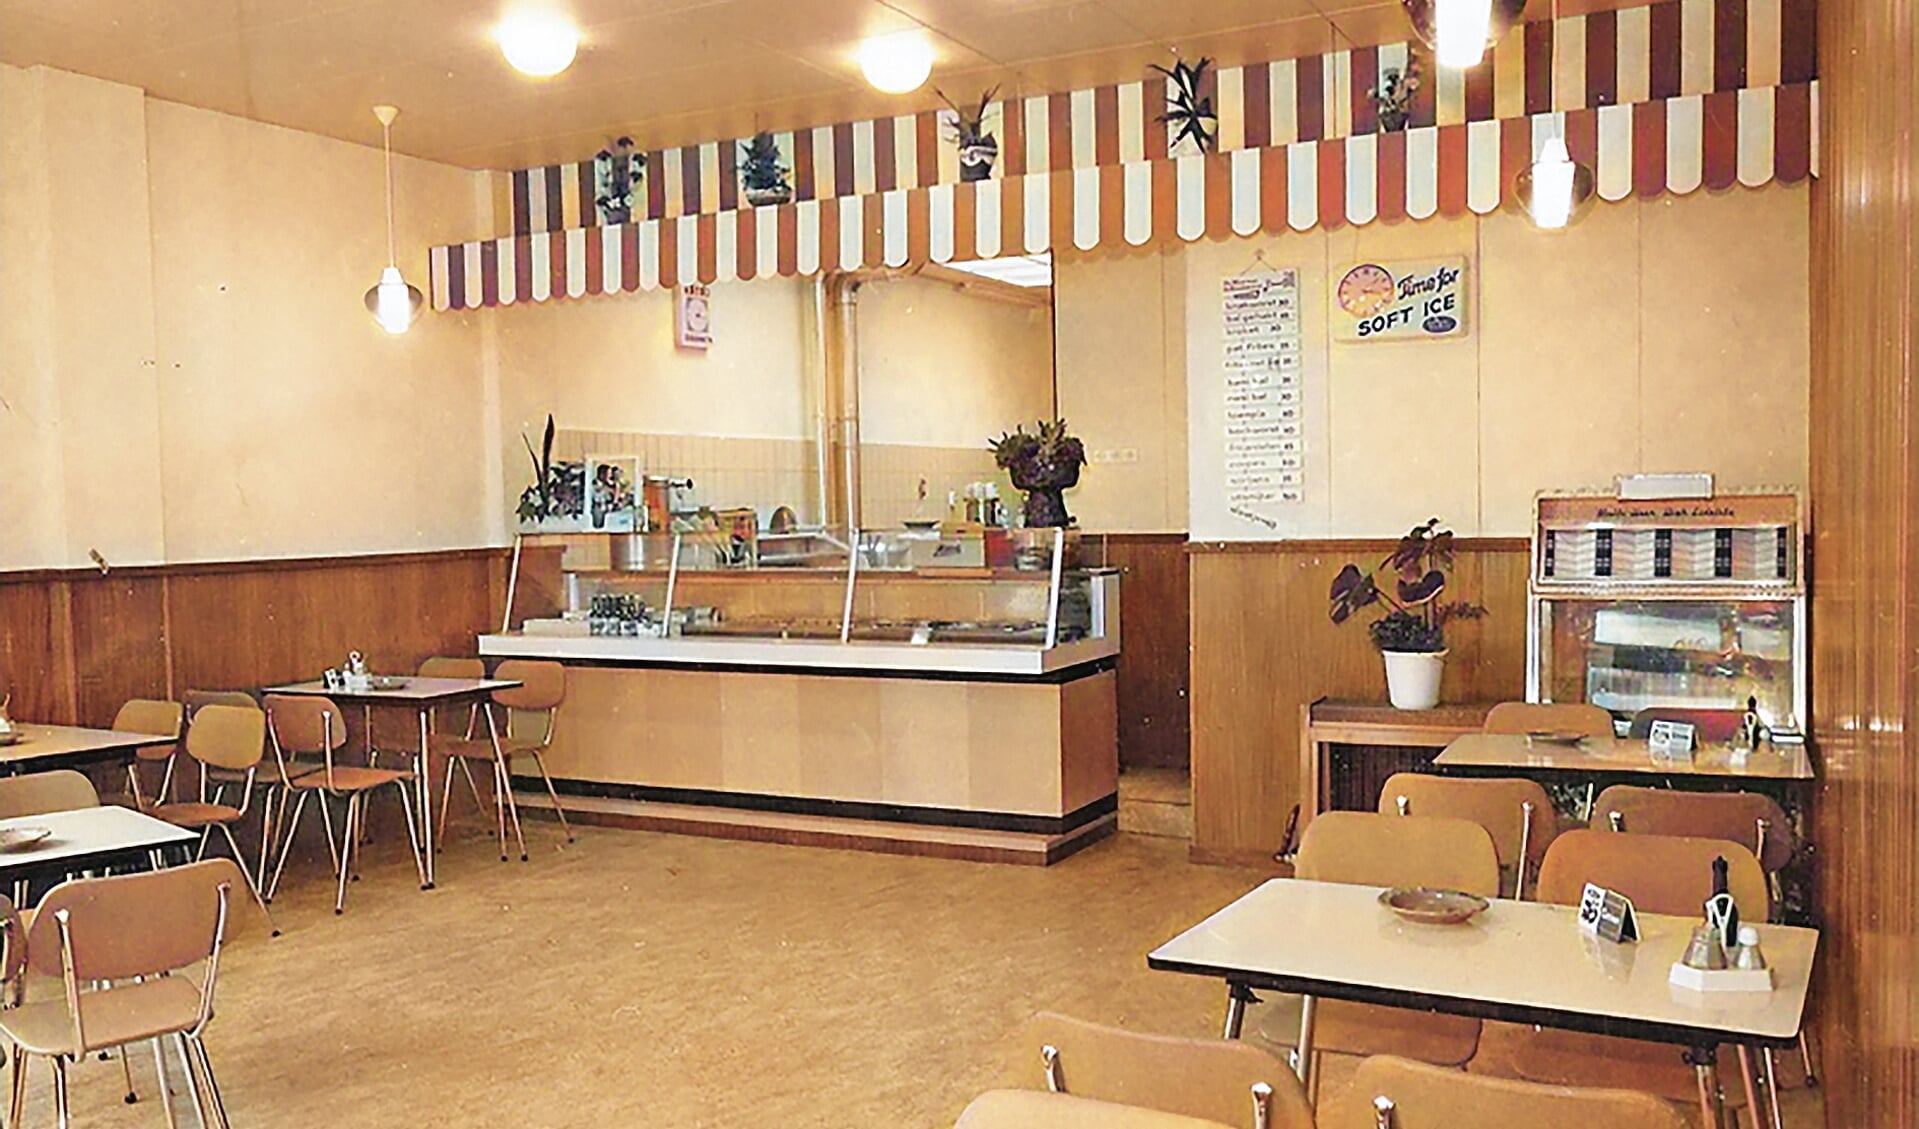 In de jaren '60 opende Gert Nederend naast zijn zaak een cafetaria dat hij de naam 'Arminius' gaf. Op de foto is rechts de jukebox goed te zien. De 'Eenarmige bandiet' die ook veel aantrekkingskracht had, is op deze foto nog niet aanwezig.